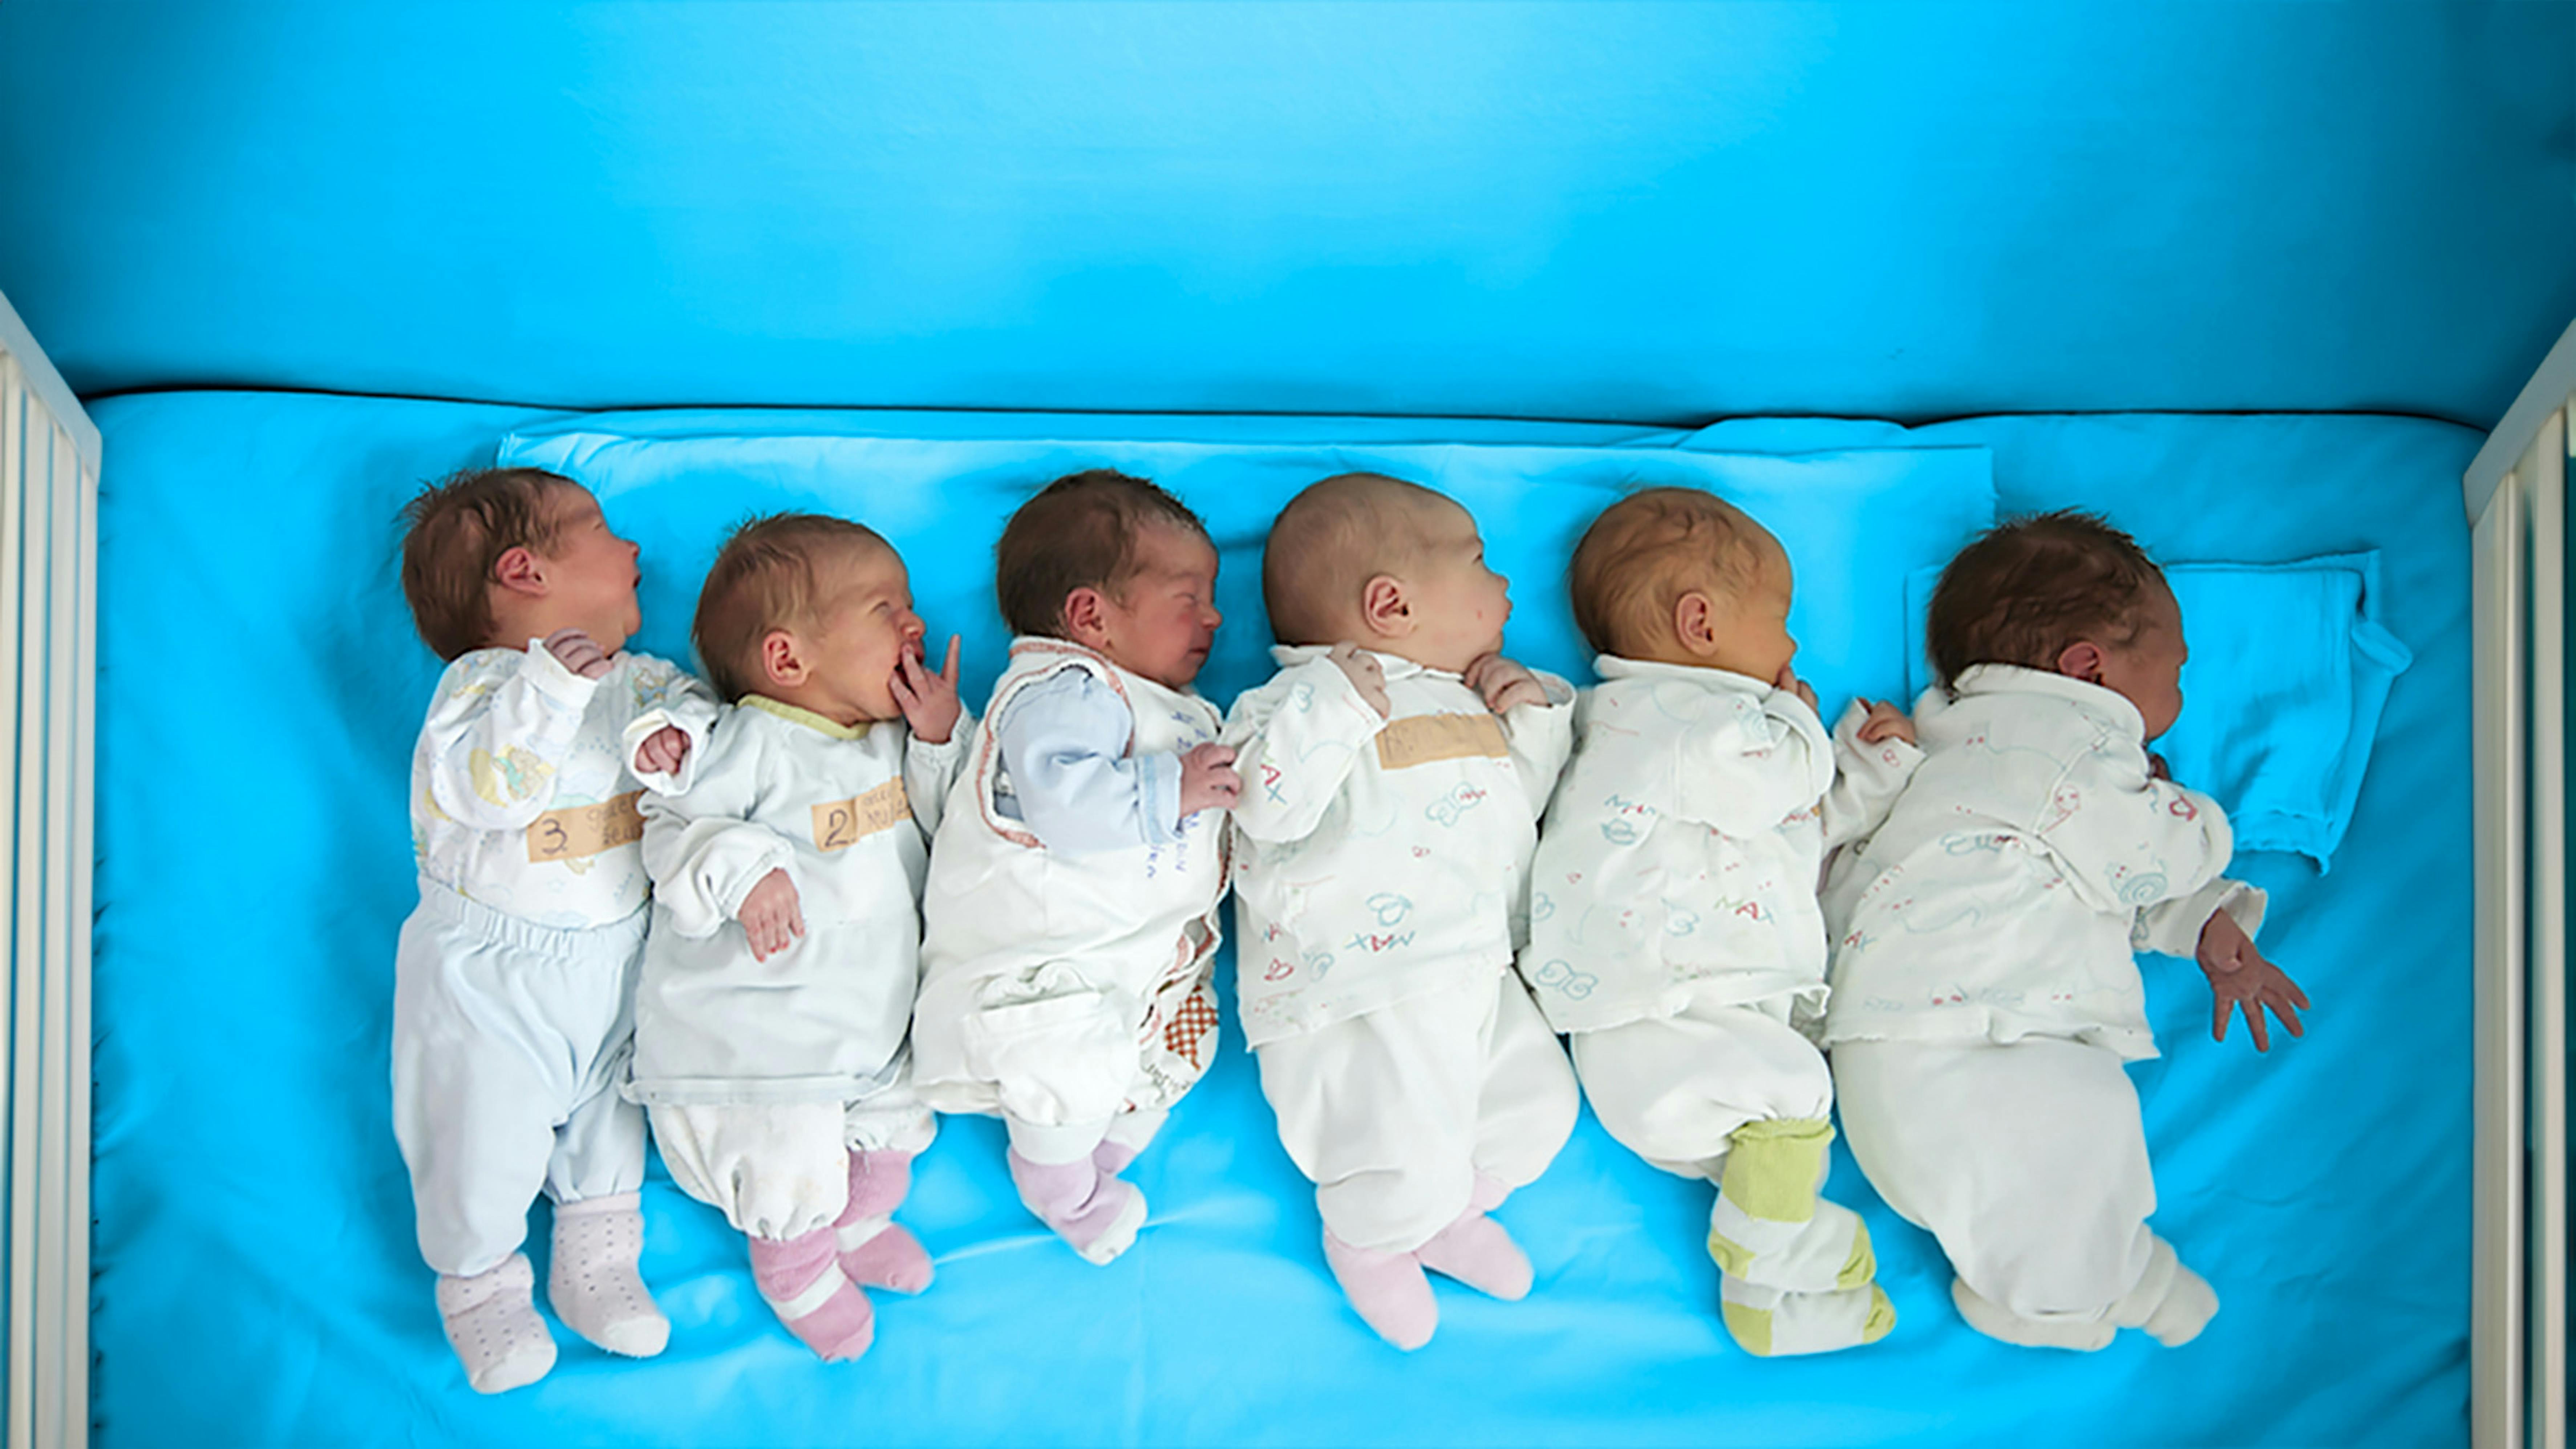 sei bambini appena nati giacciono uno accanto all'altro mentre vengono fotografati nel reparto maternità di Niksic, nel comune di Niksic, in Montenegro.